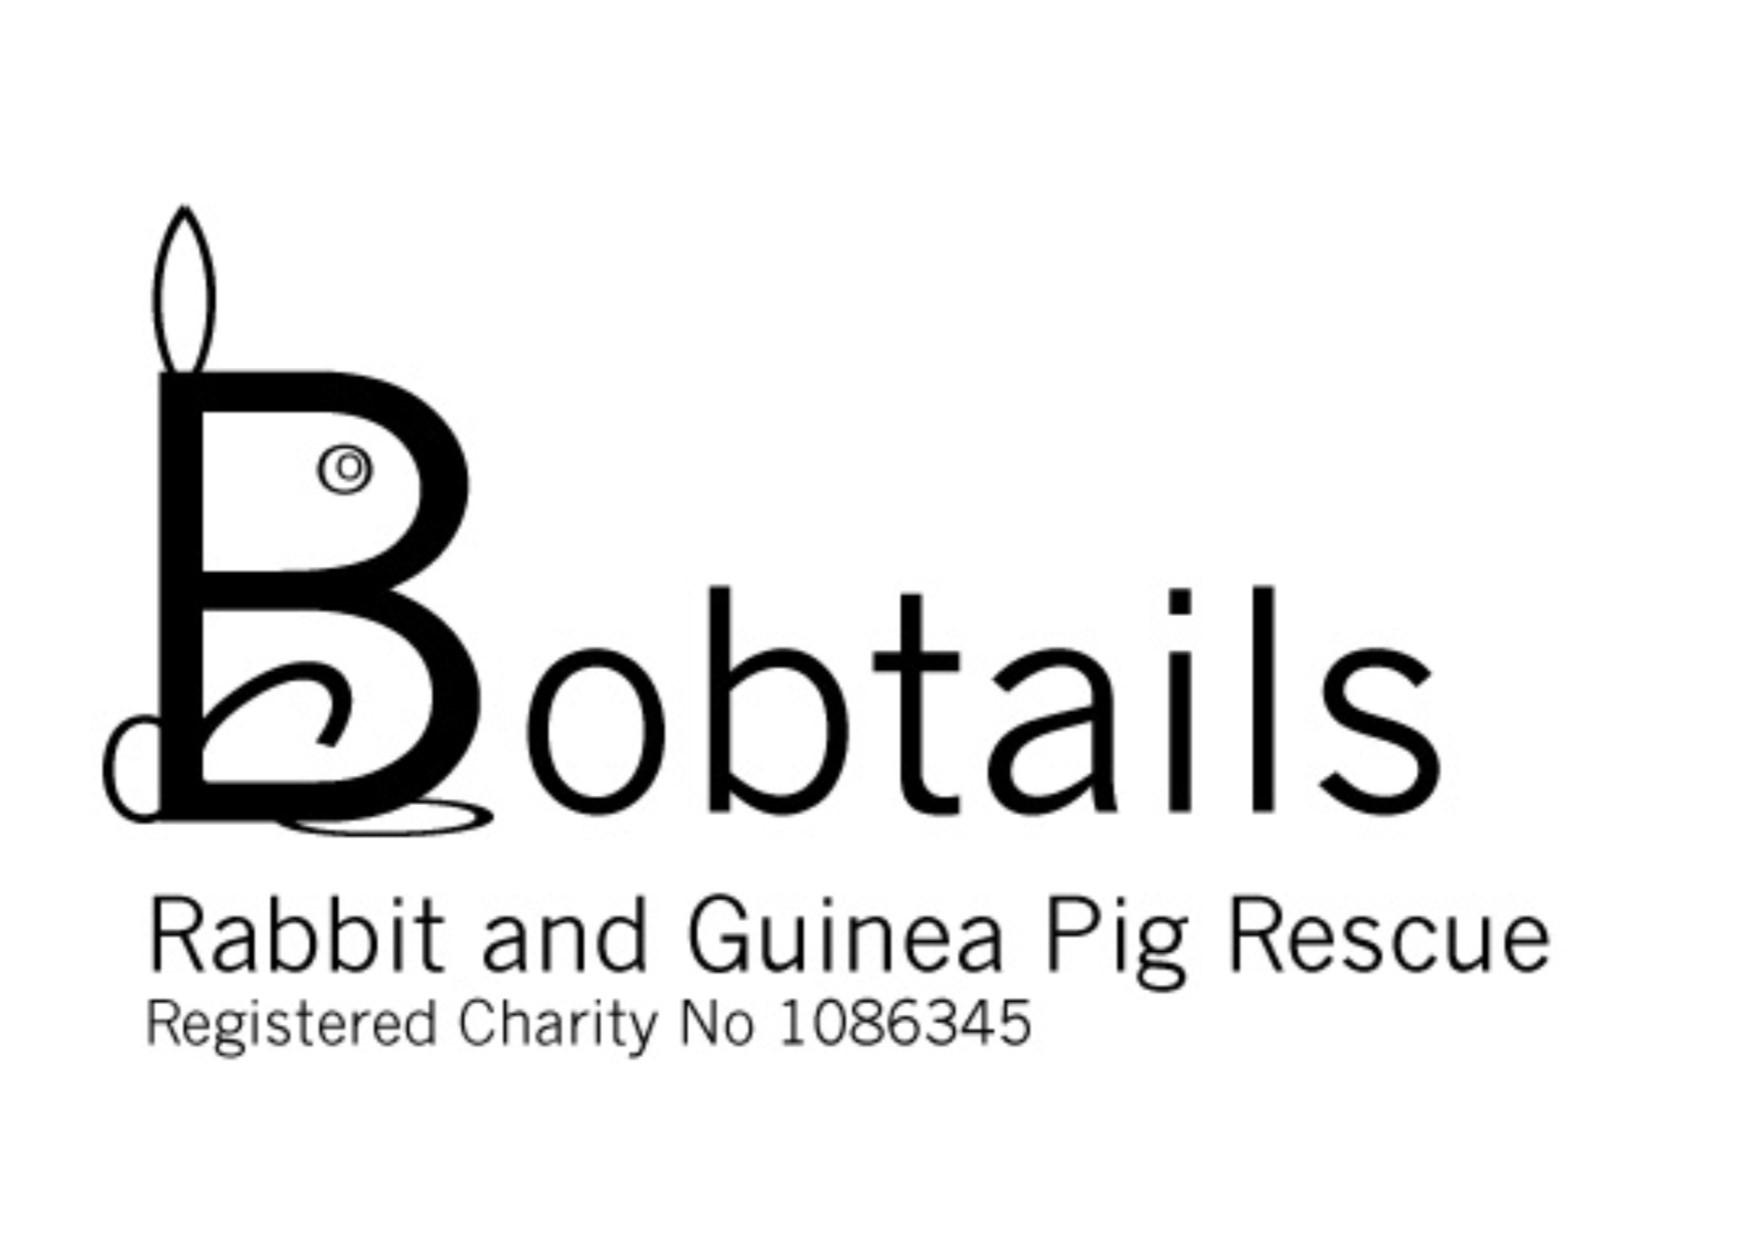 Bobtails Rabbit and Guinea Pig Rescue